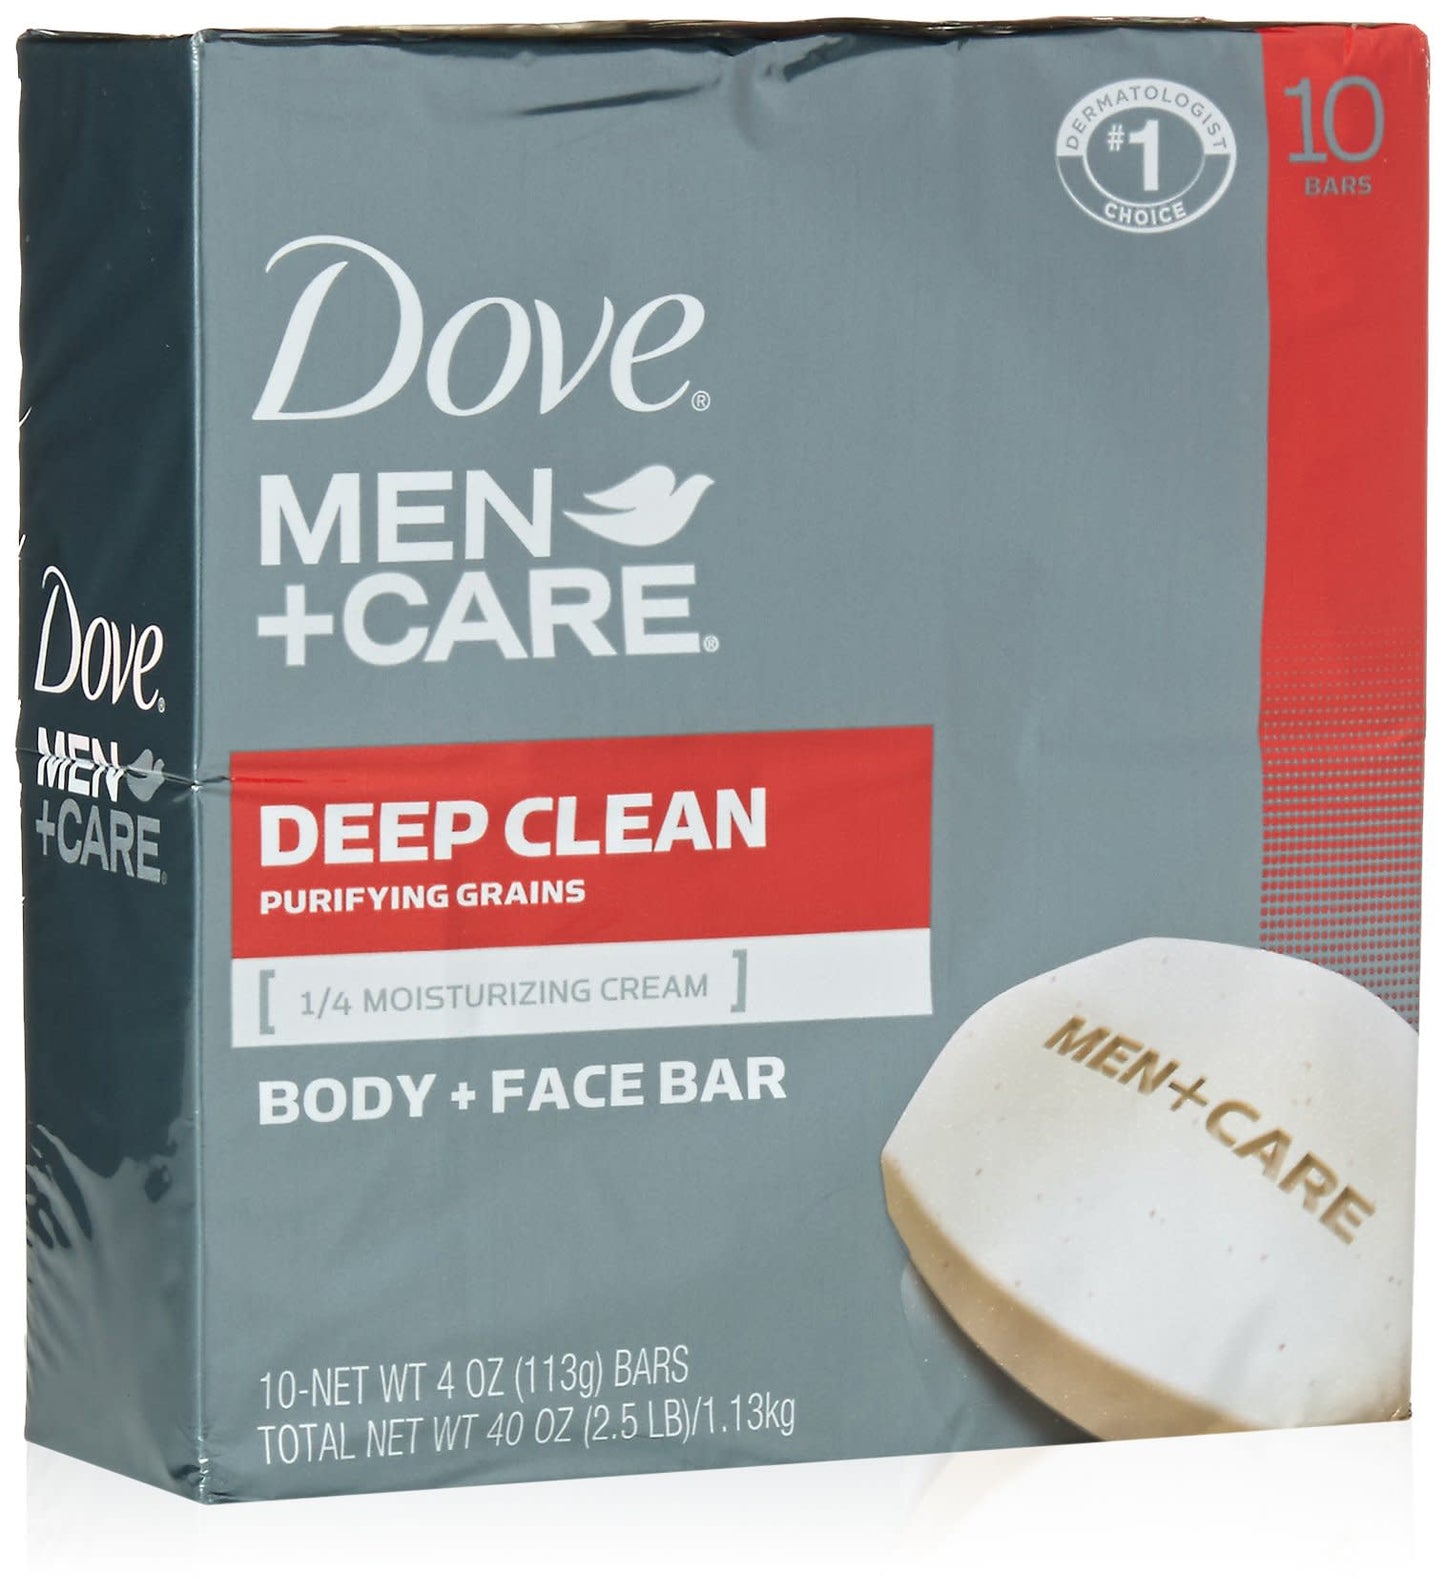 DOVE MEN + CARE DEEP CLEAN FACE & BODY BAR 12-4 OZ BAR